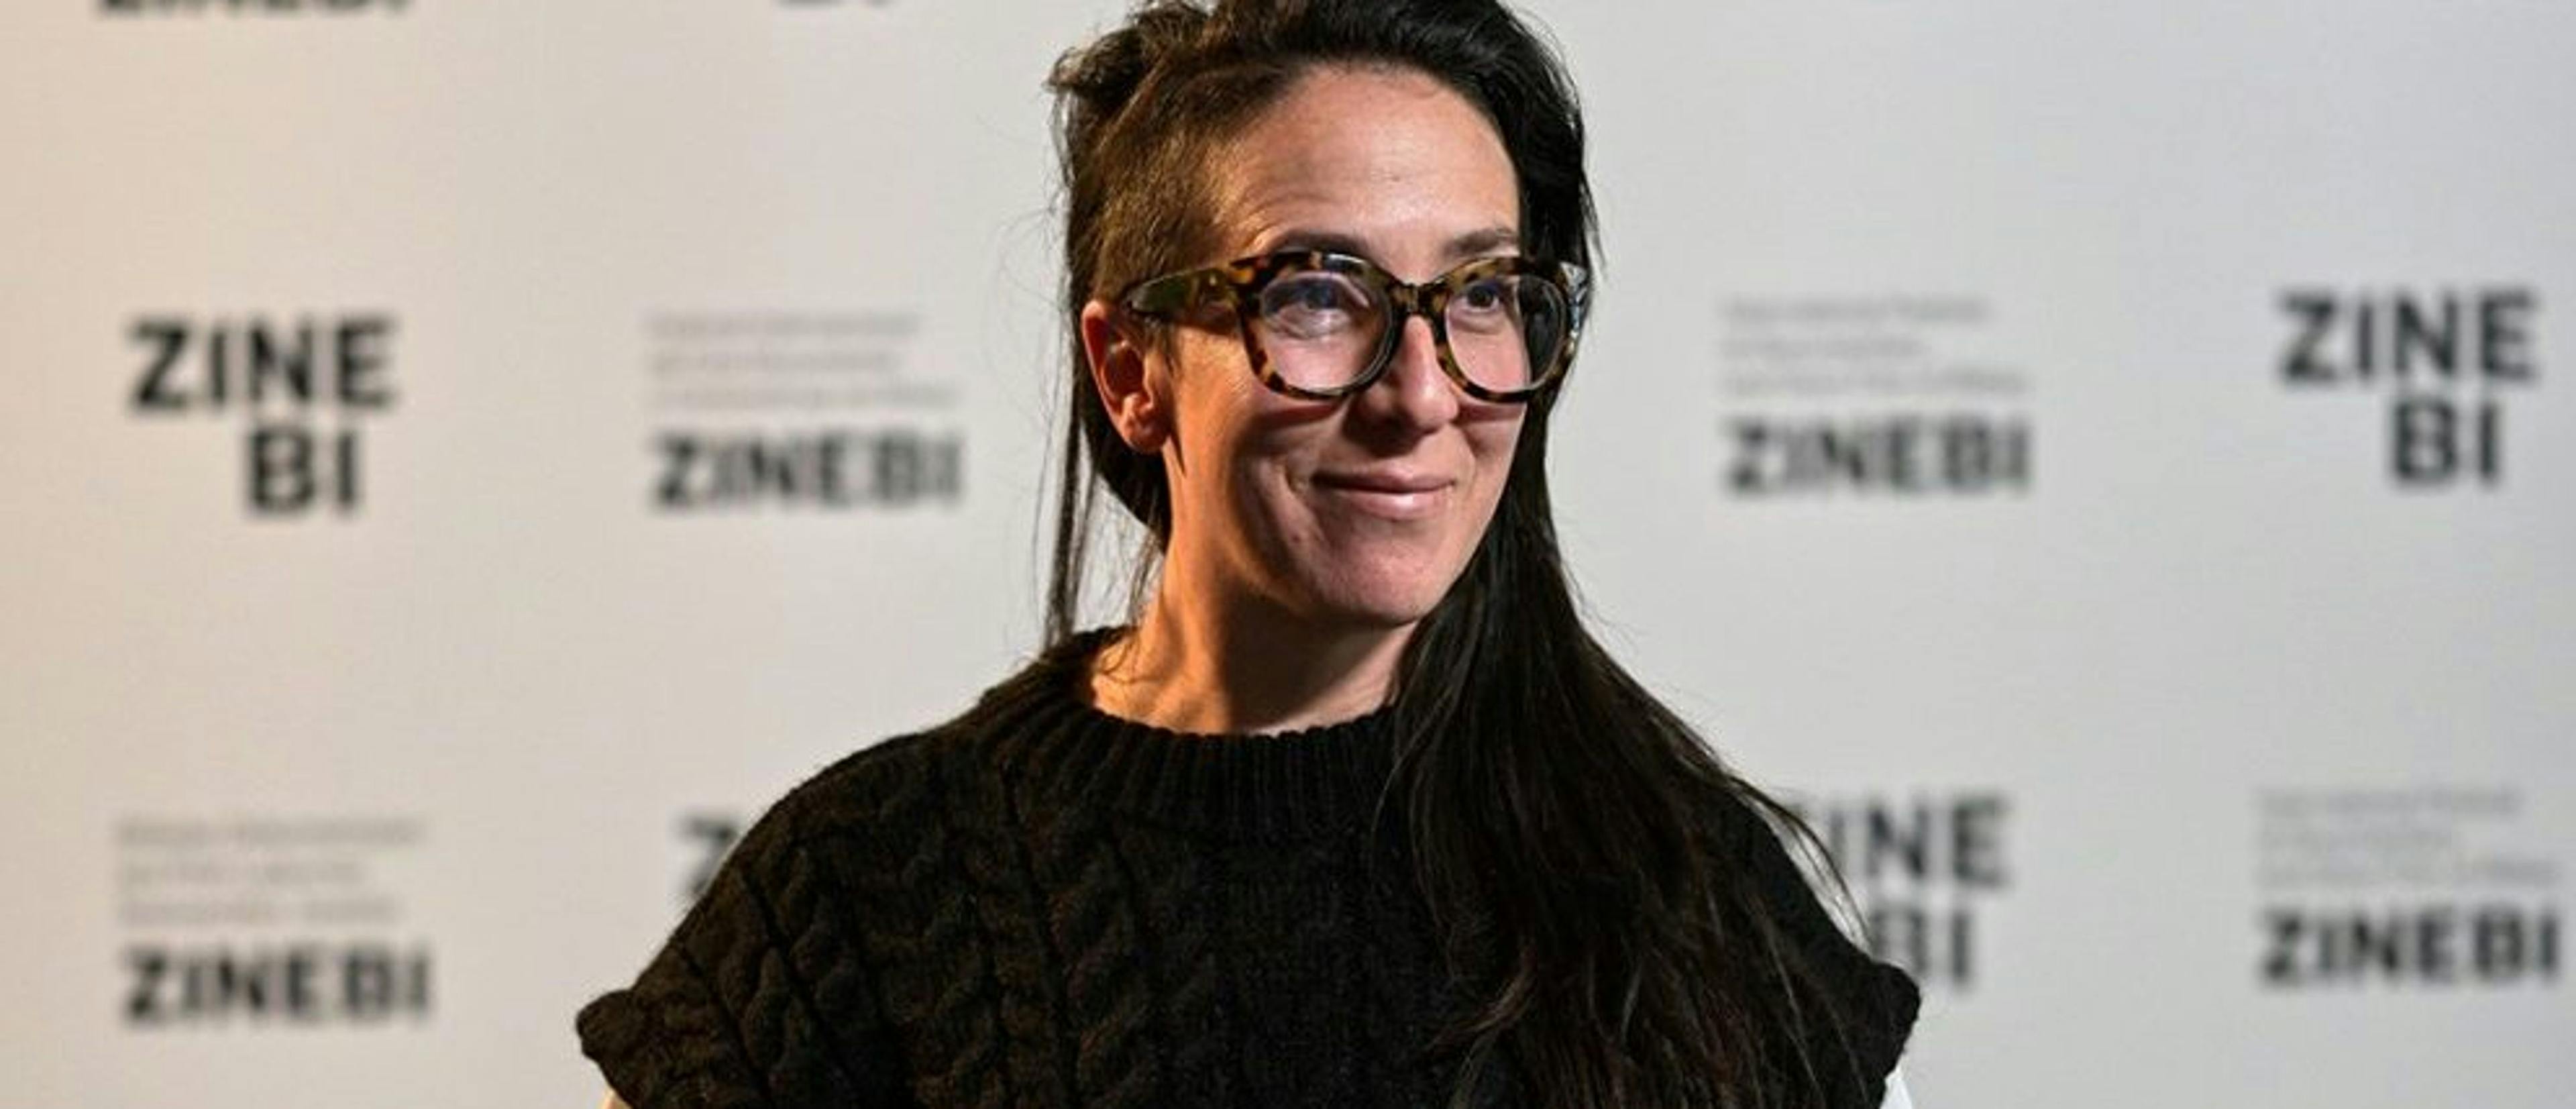 La productora y directora Diana Bustamante, durante una visita al festival Zinebi de Bilbao